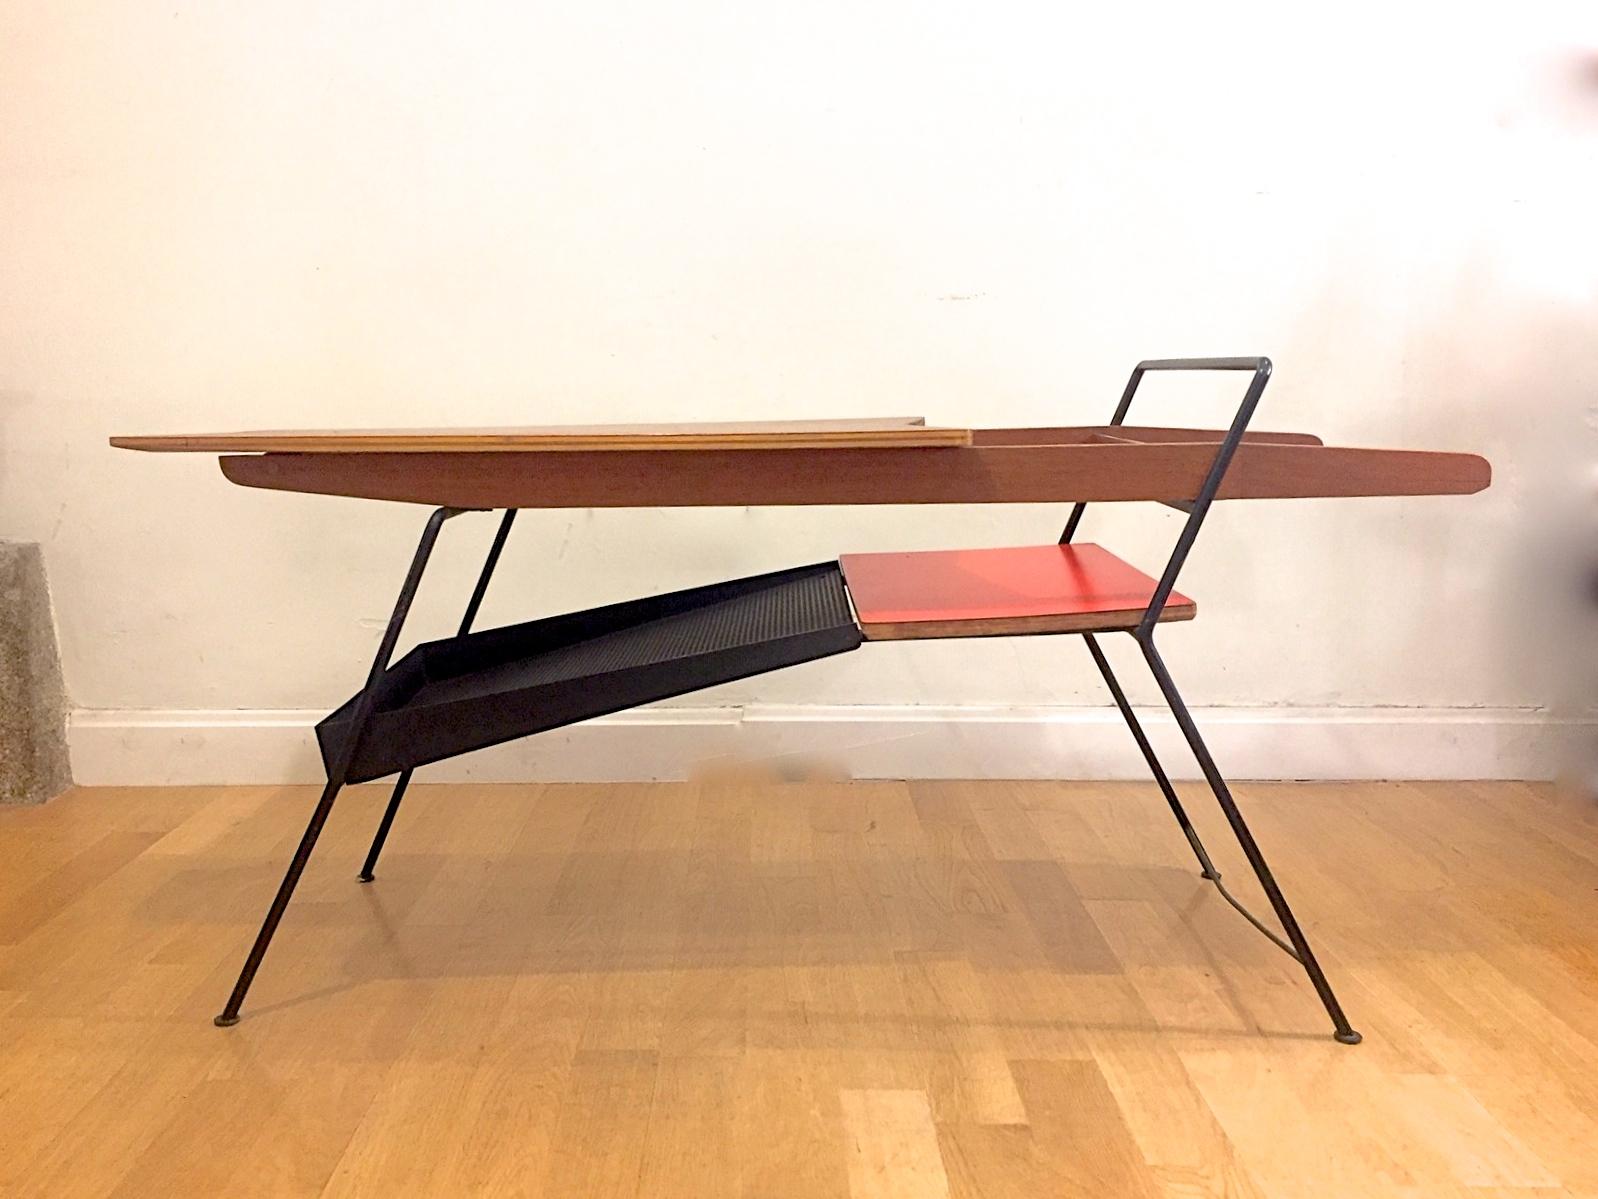 Une table basse italienne à la manière de Pierre Guariche. éditée en 1950. Teck et métal émaillé. Style industriel avec une touche sophistiquée.